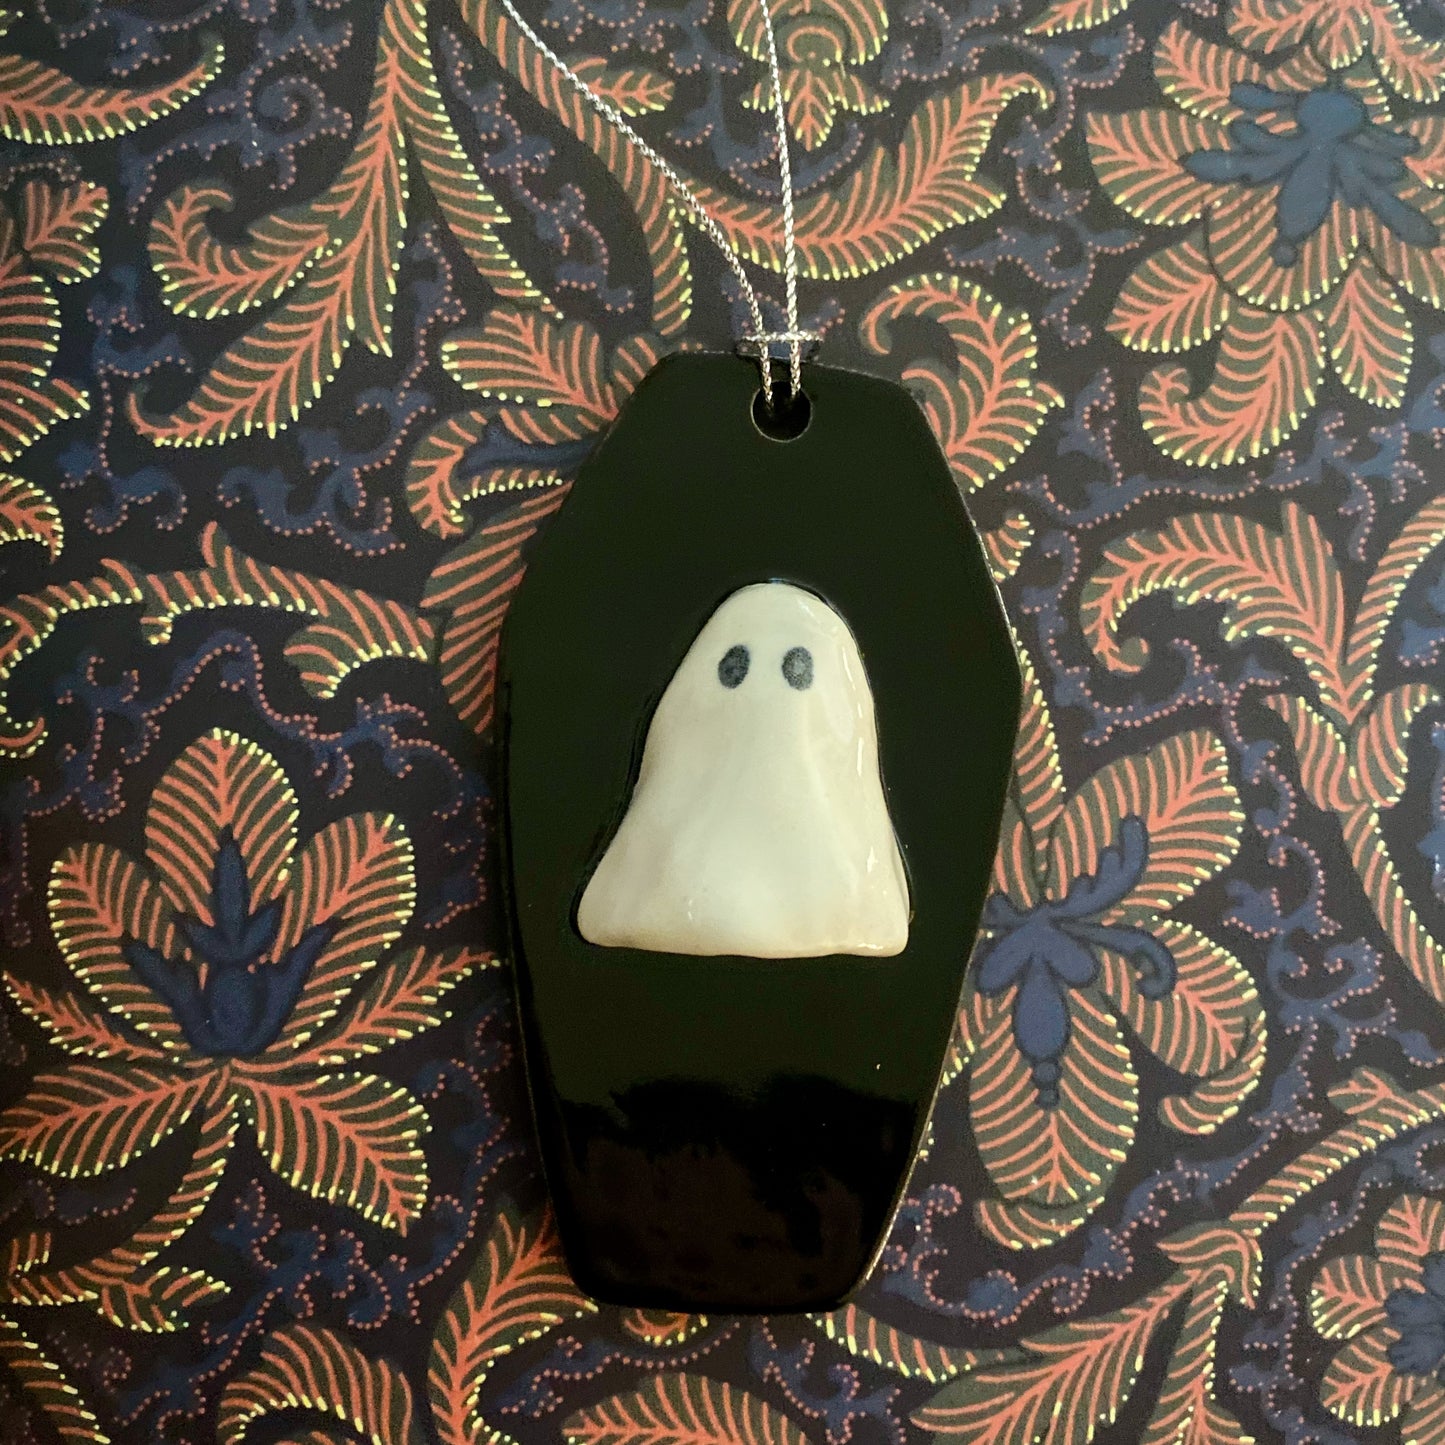 Ghost coffin ornament